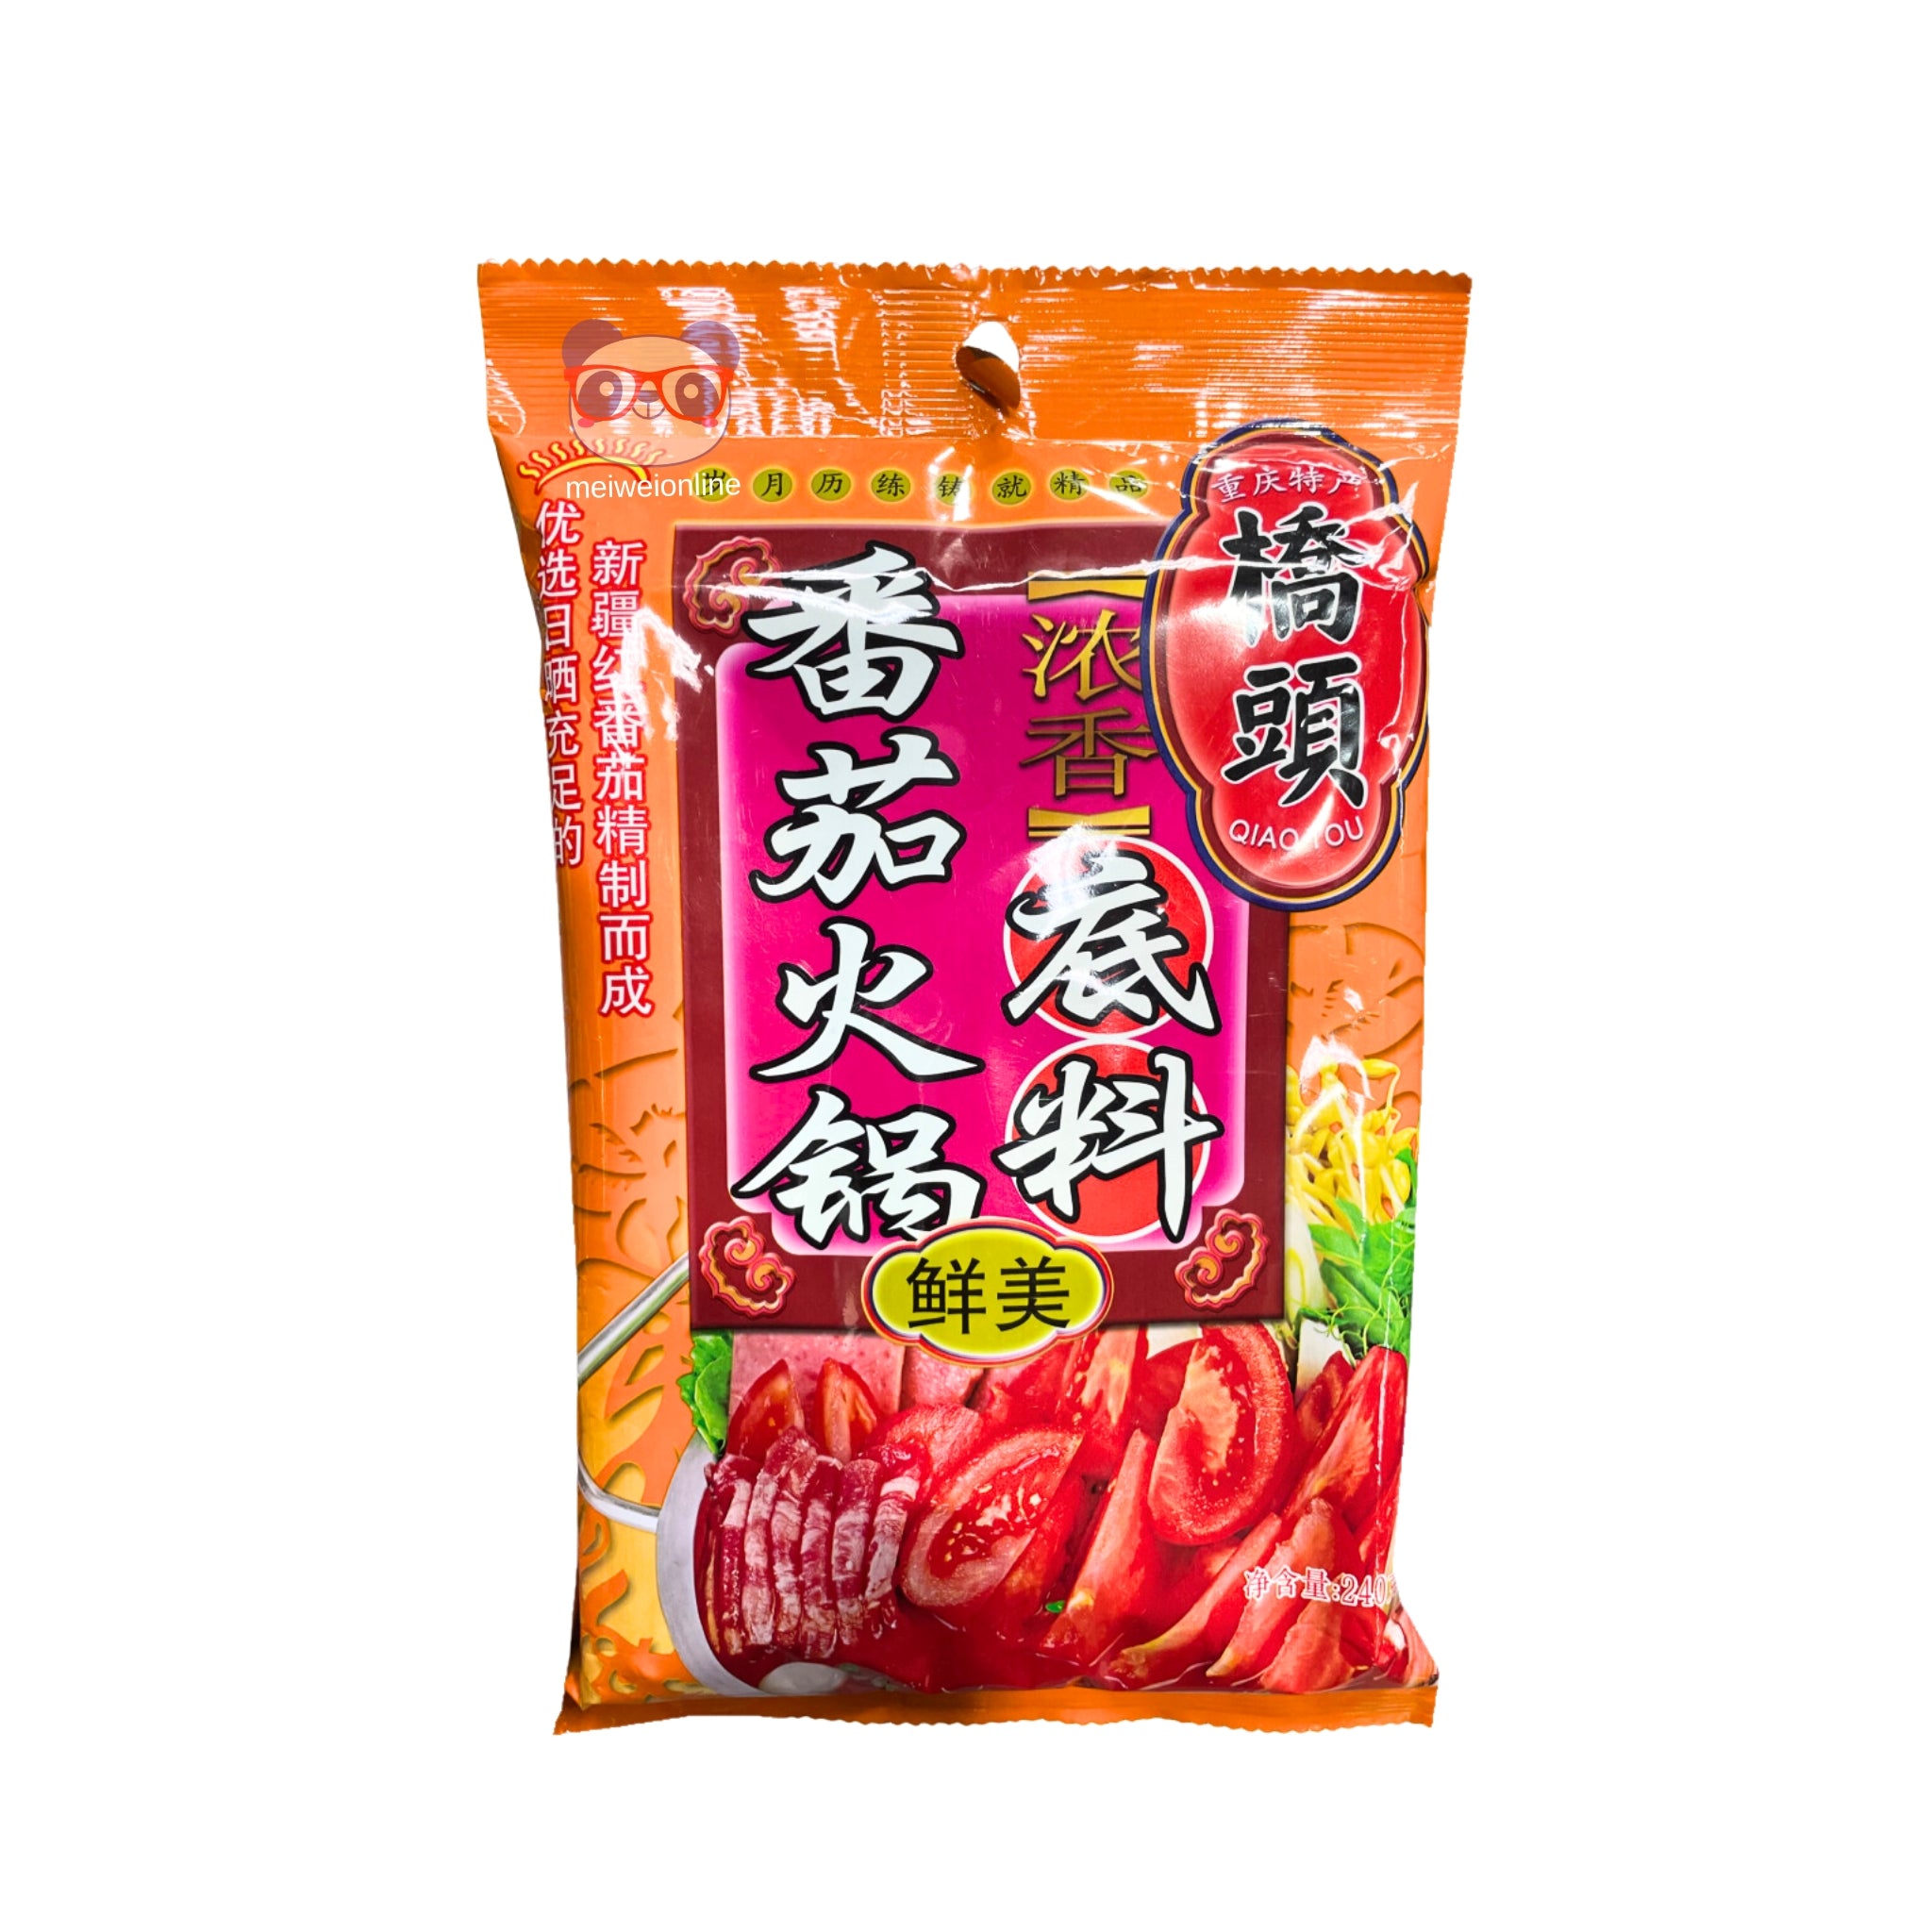 Base de Hot Pot sabor tomate QiaoTou 240g